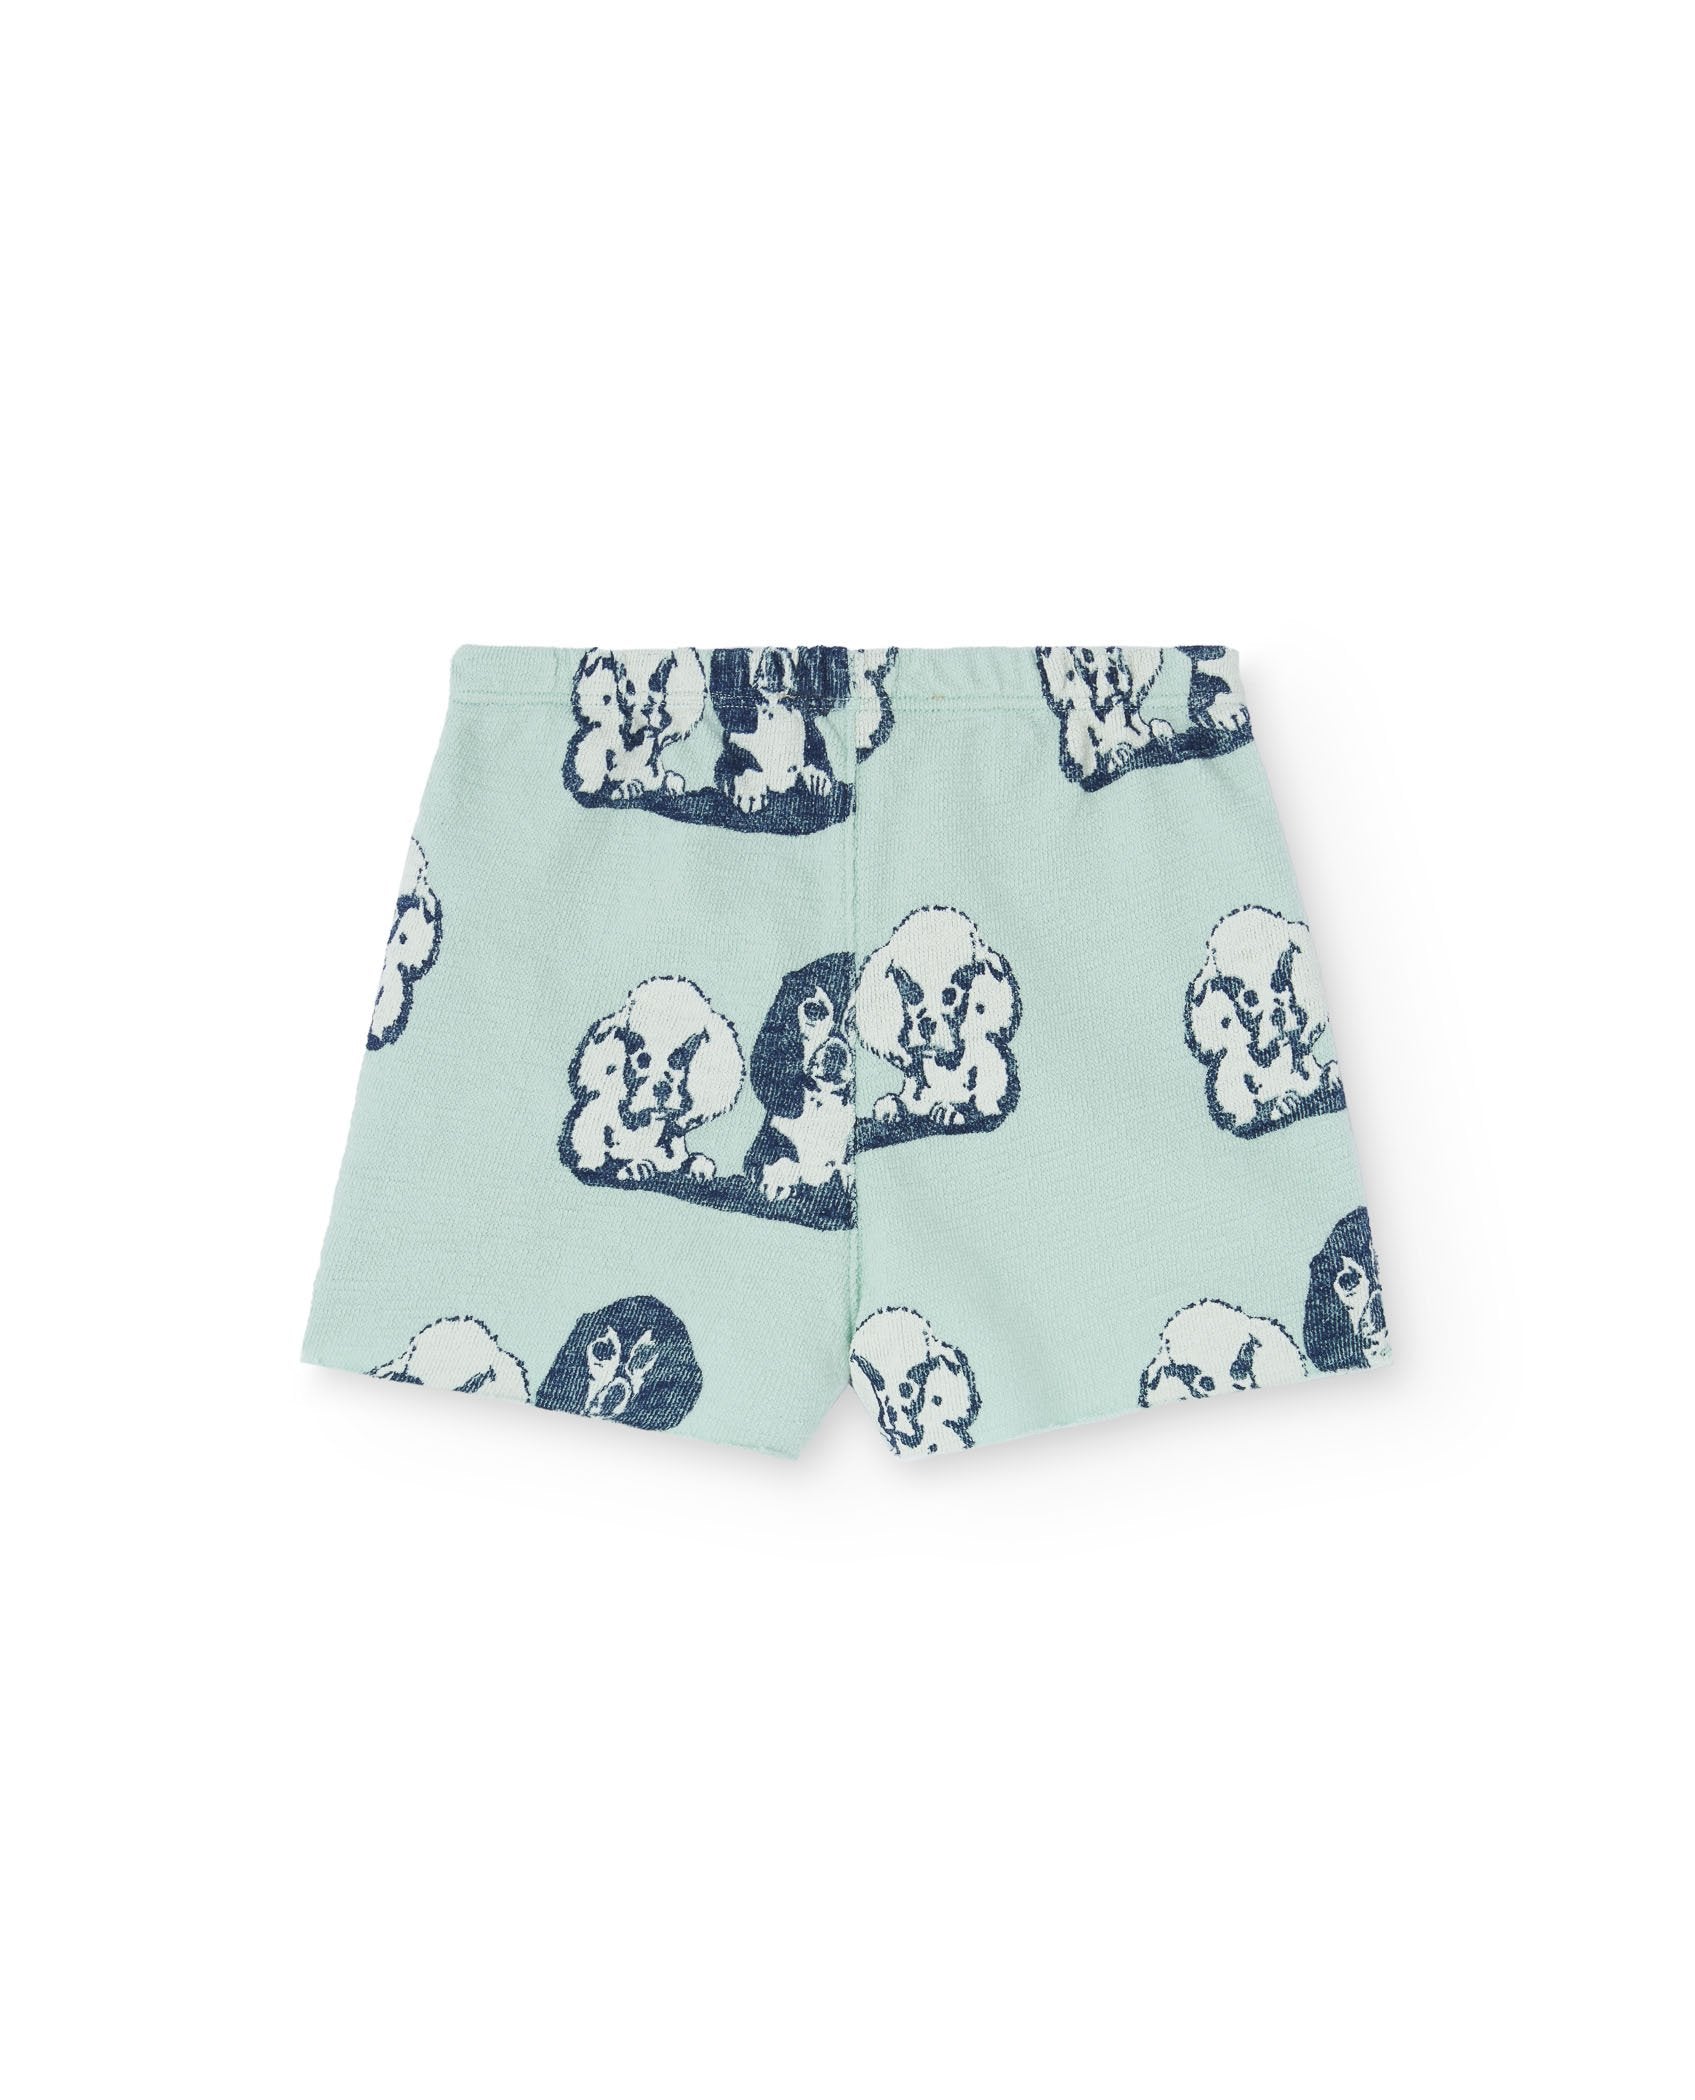 Turquoise Hedgehog Baby Shorts PRODUCT BACK